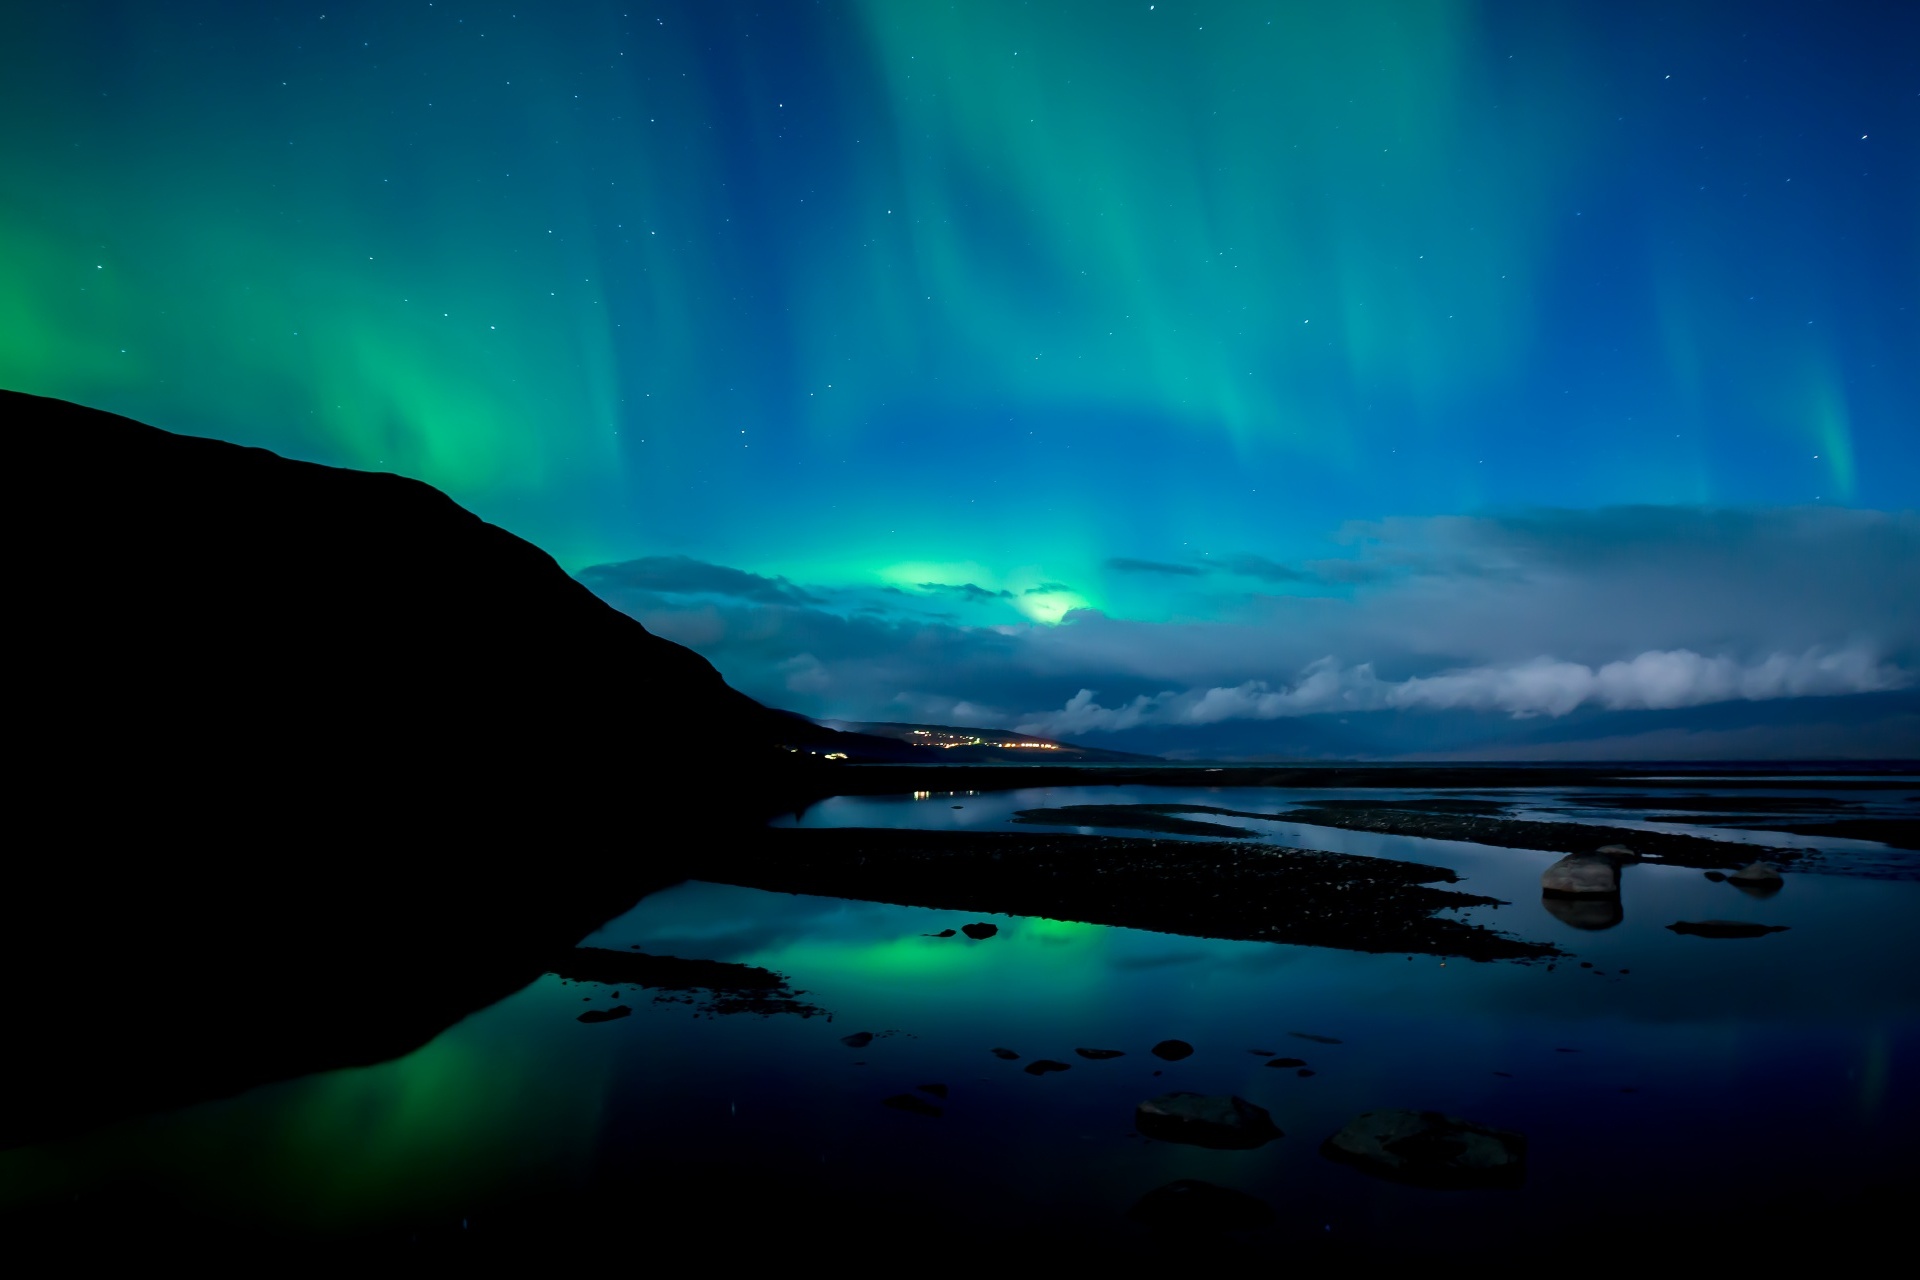 オーロラと月の光 スウェーデンの風景 毎日更新 北欧の絶景をお届けします Hokuo Guide Com S 北欧の風景